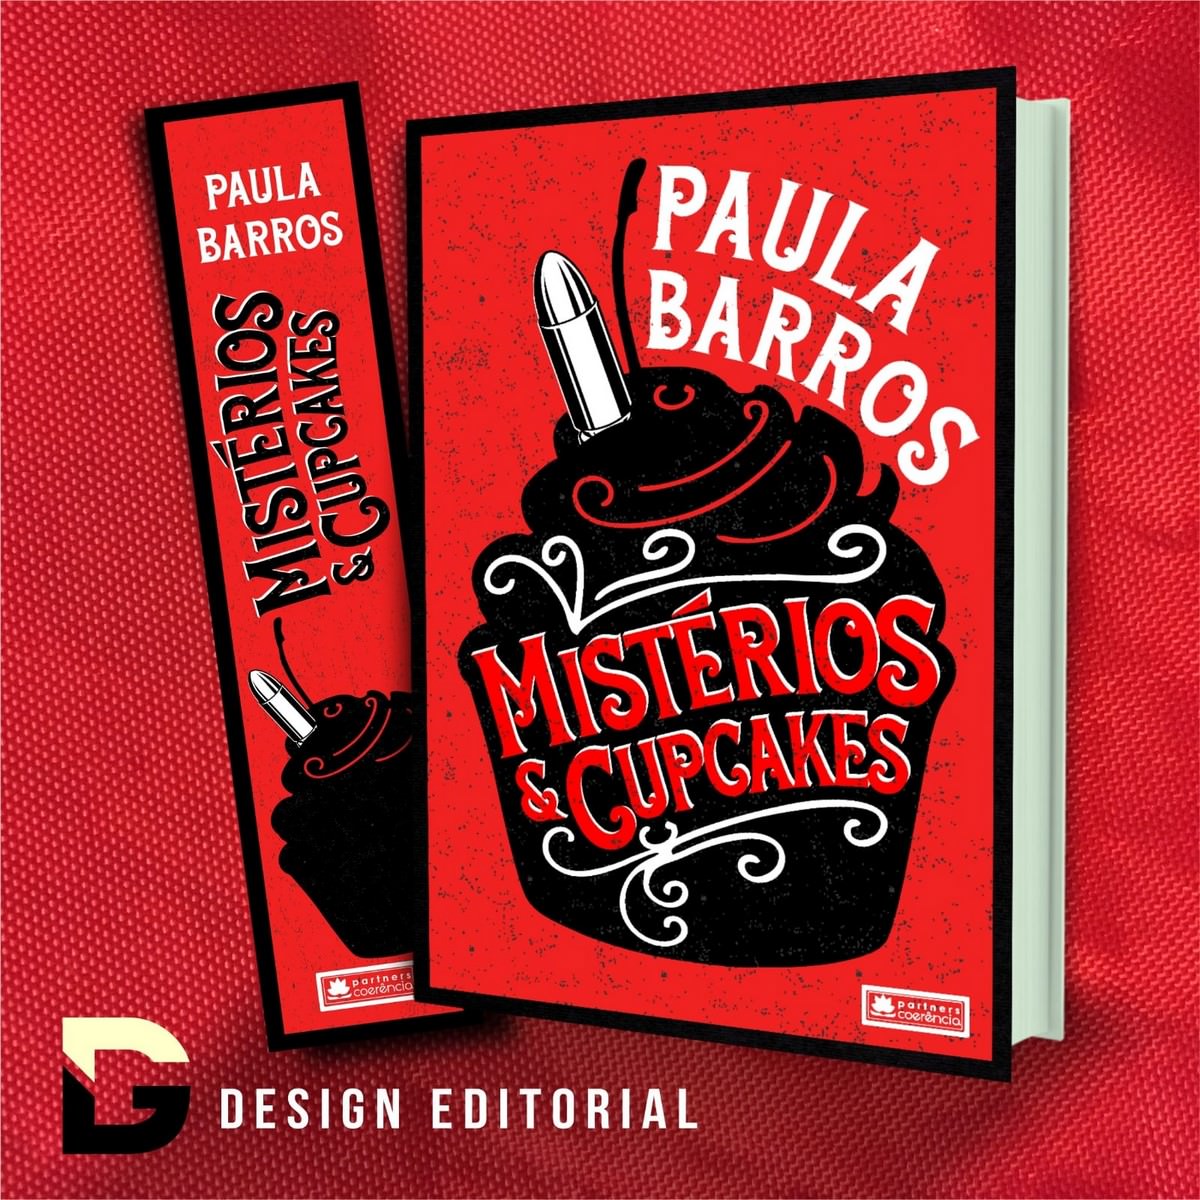 "Misterios y cupcakes", el libro debut de la autora Paula Barros, bandera. Divulgación.